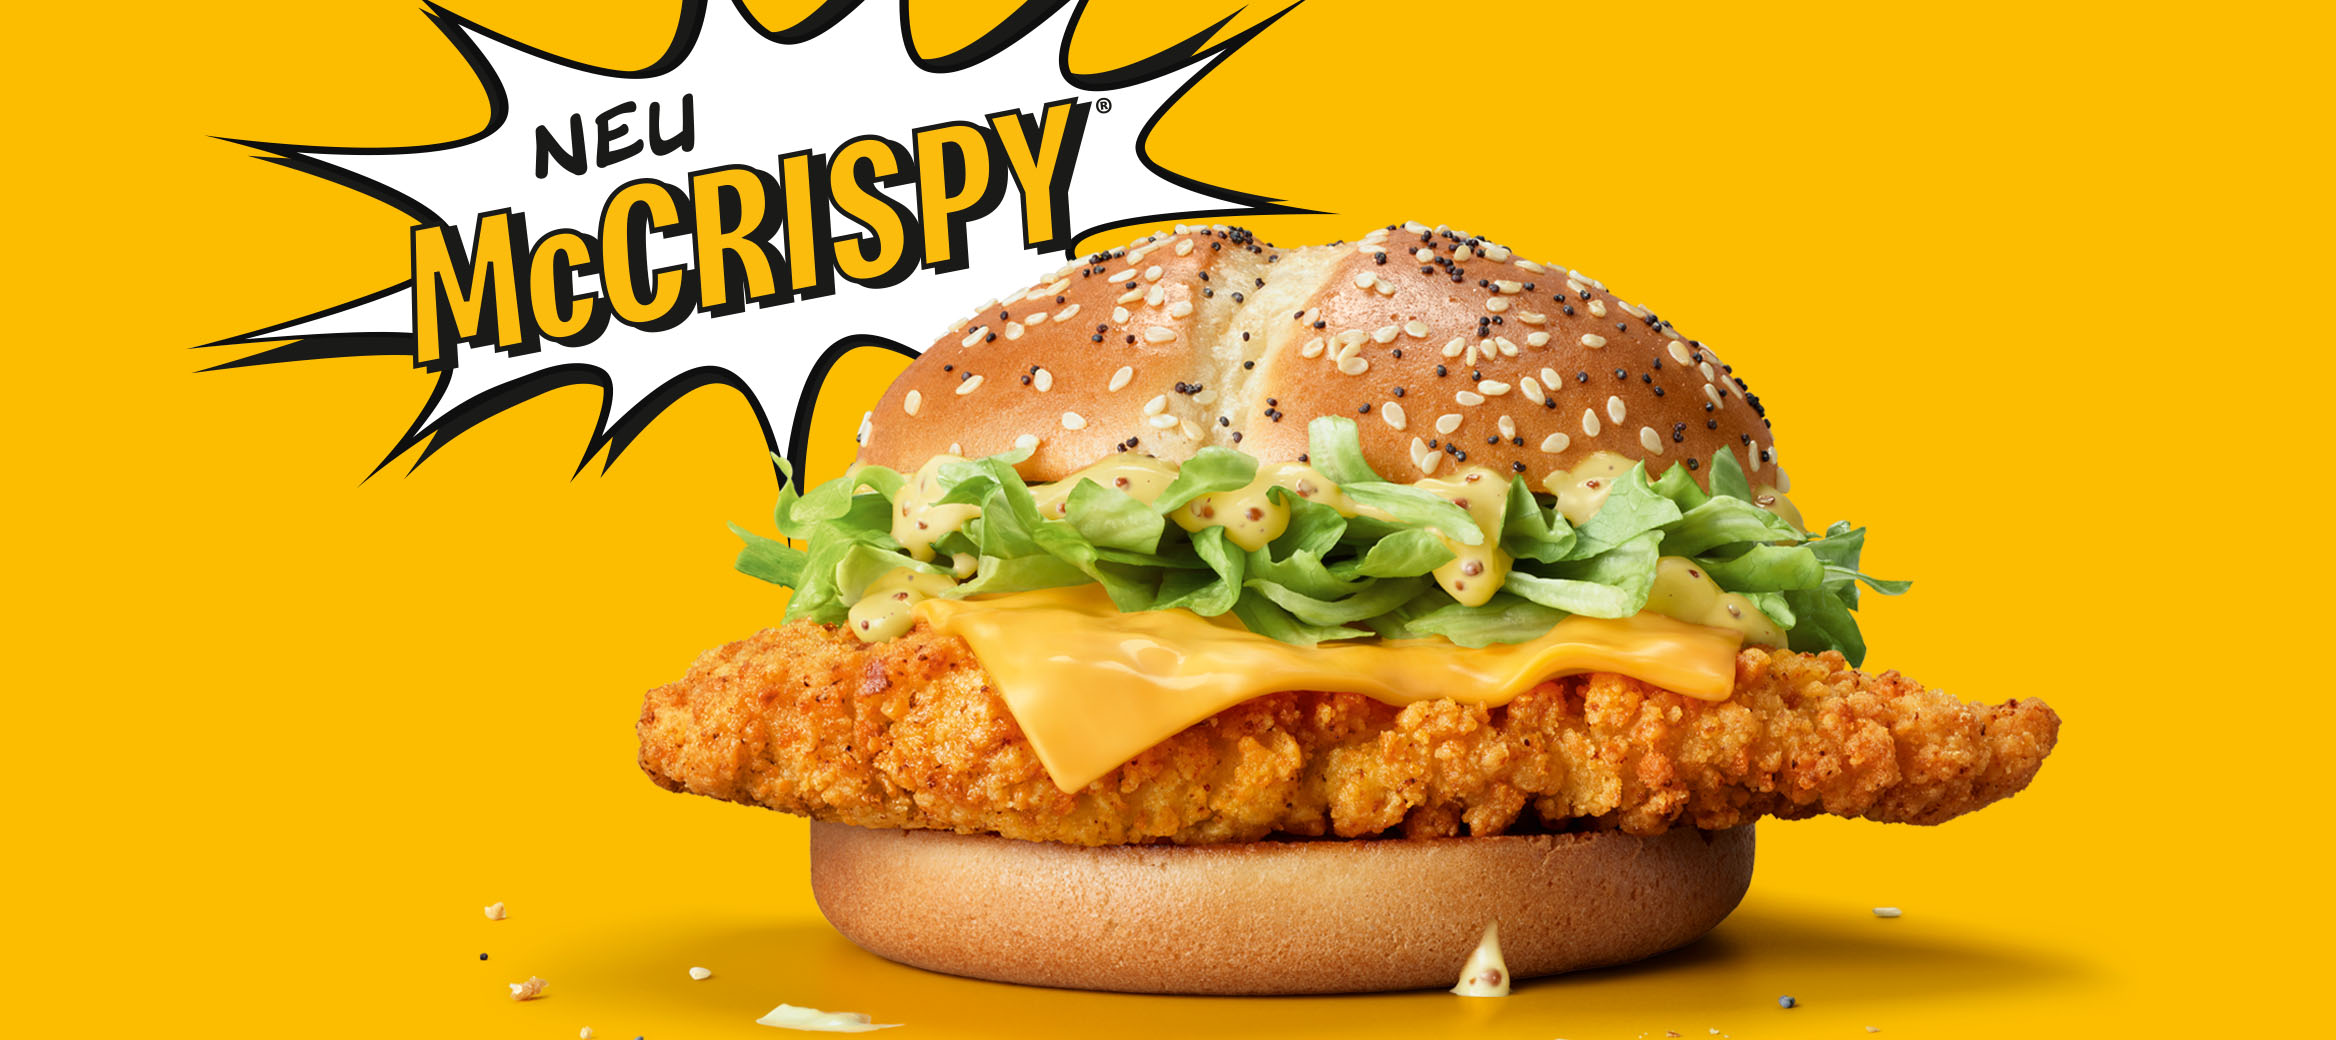 McCrispy®. Unser lautestes Chicken ist da!  Der McCripsy® mit superknuspriger Panade klingt gut und schmeckt noch besser.